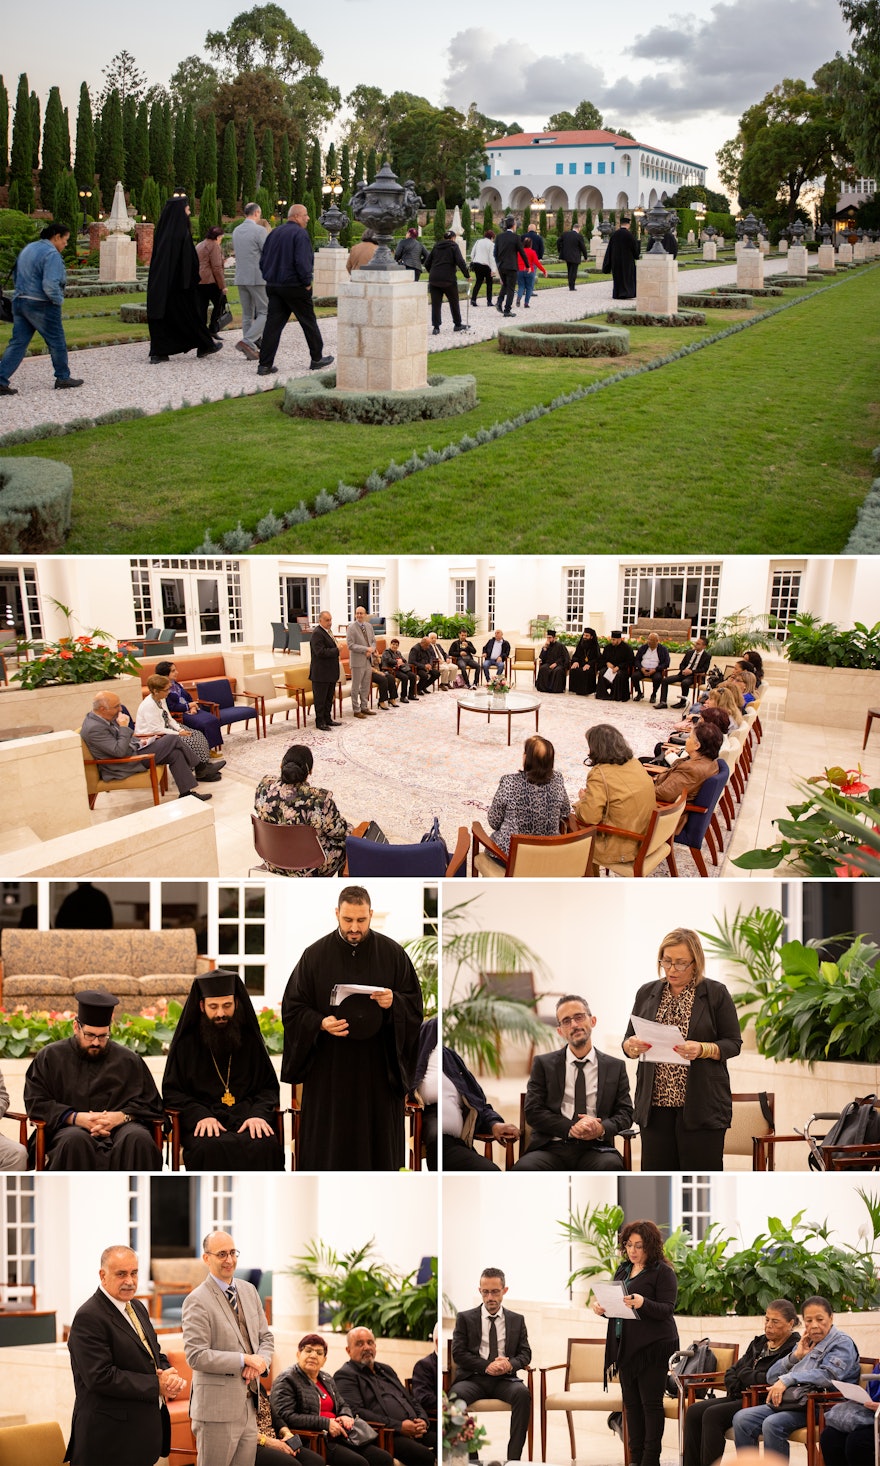 Делегация из 20 членов греческой православной общины и членов Совета Конгрегации, а также Архиепископского женского движения посетила Усыпальницу Бахауллы, а затем собралась в Центре посетителей Бахджи для молитвы.